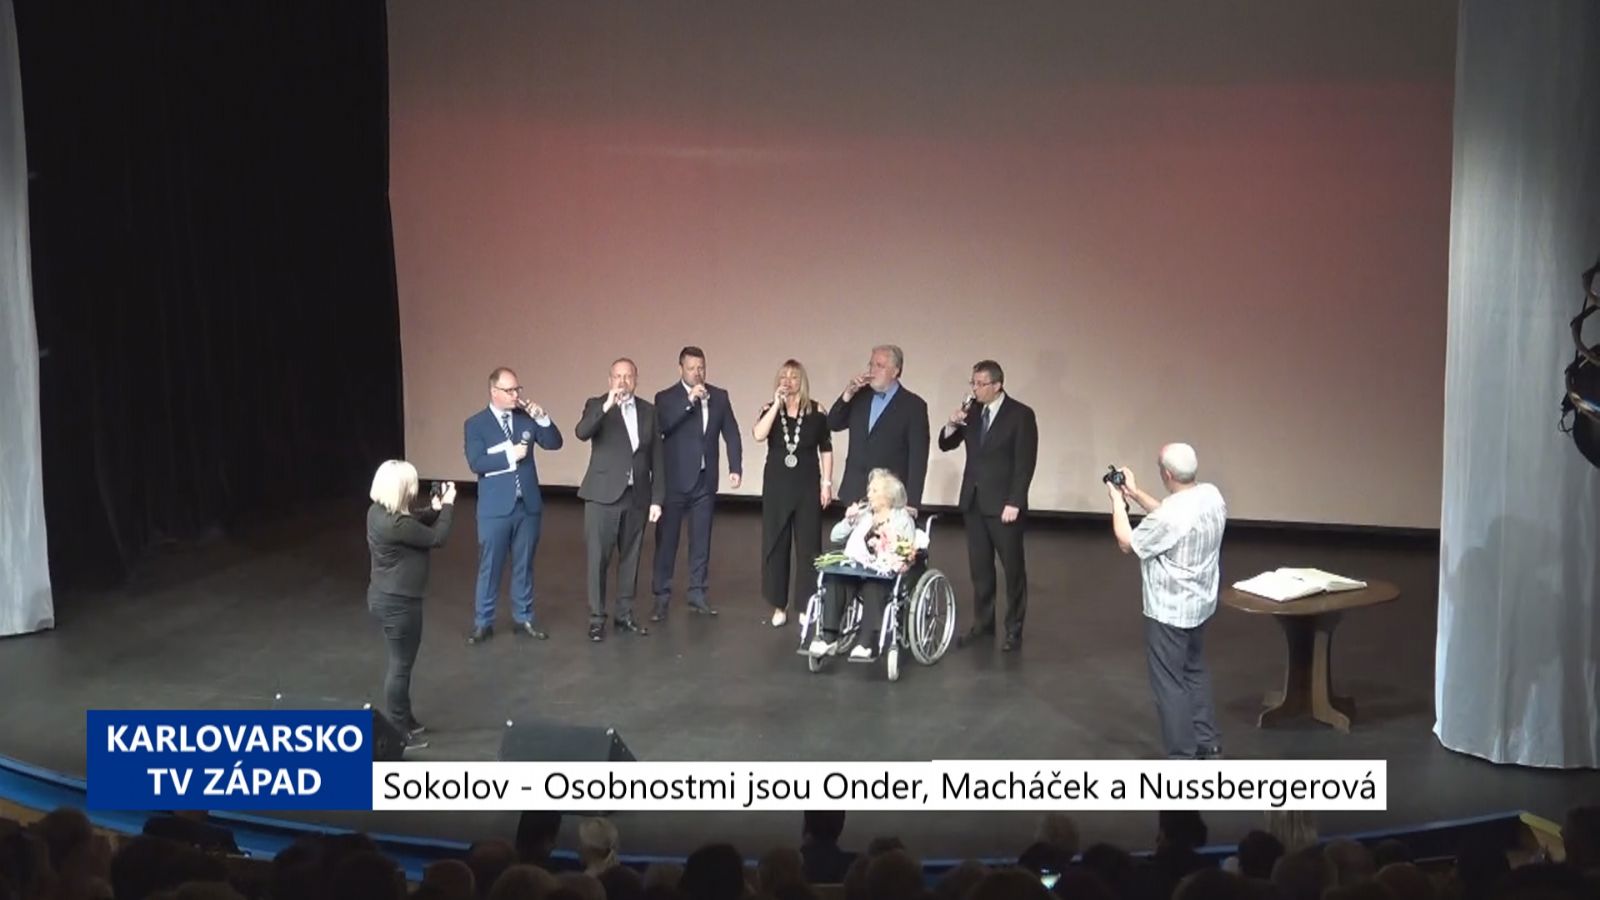 Sokolov: Osobnostmi jsou Onder, Macháček a Nussbergerová (TV Západ)